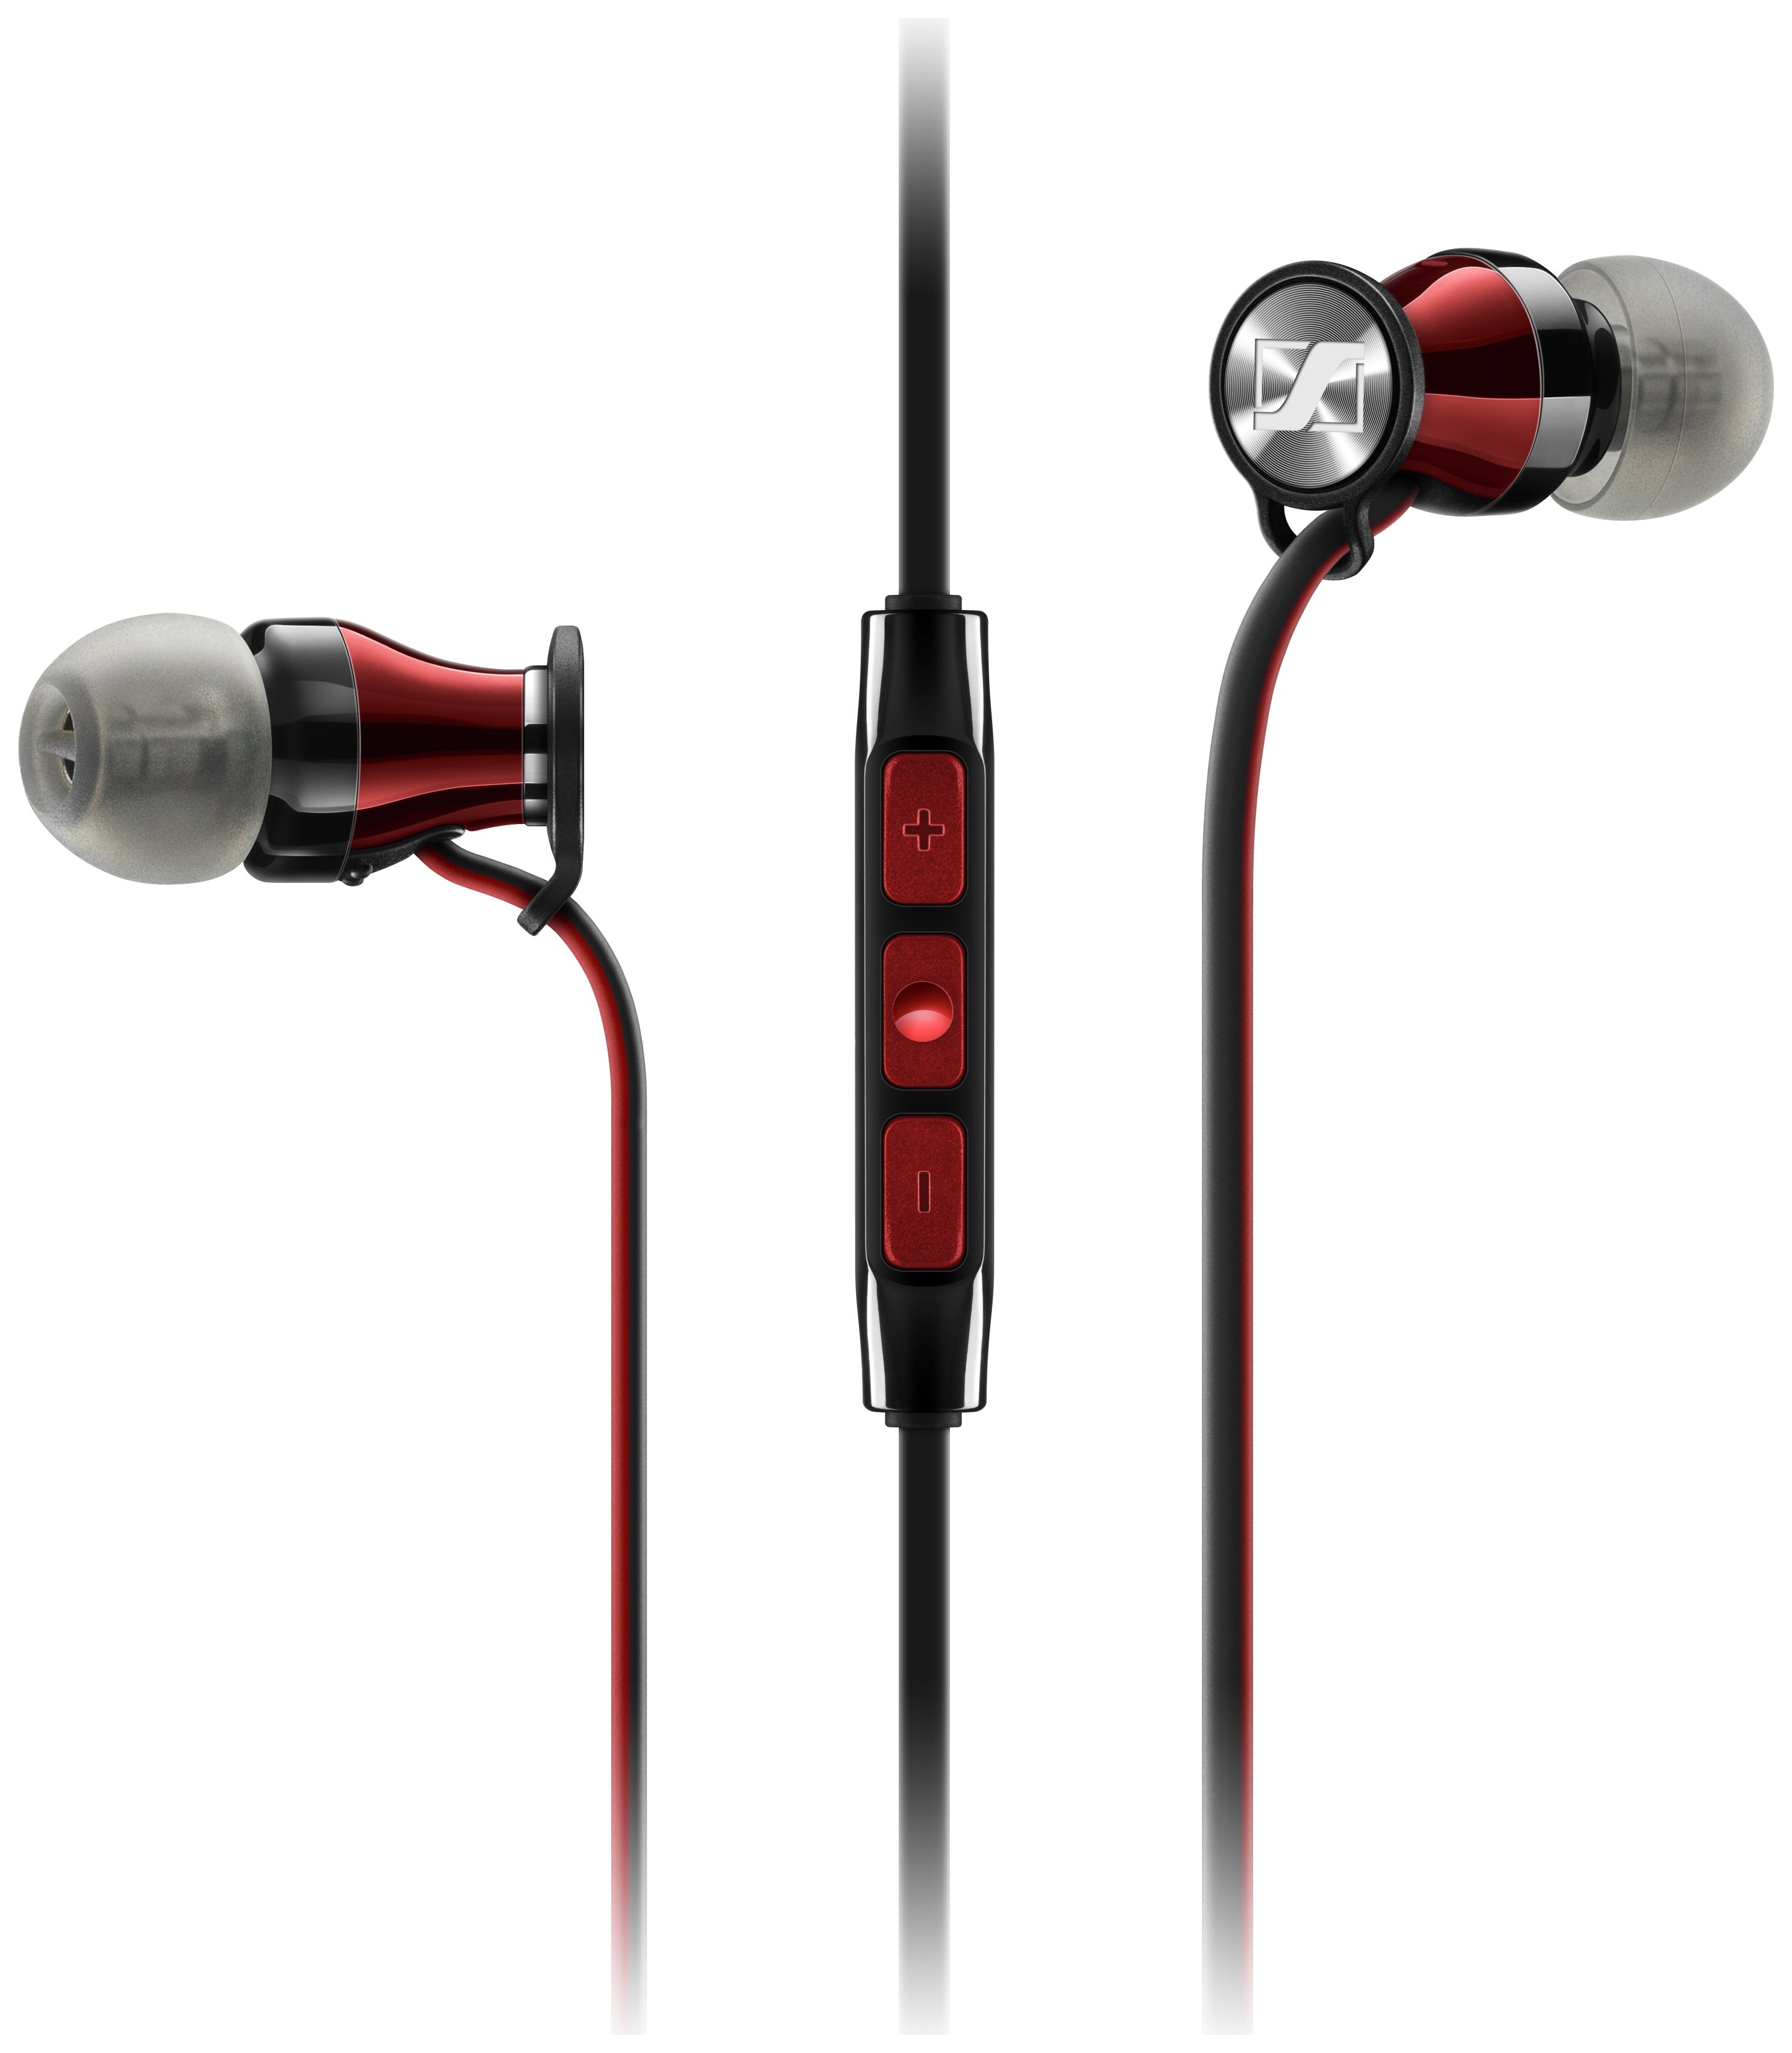 Sennheiser Momentum In Ear Headphones for Android- Black Red